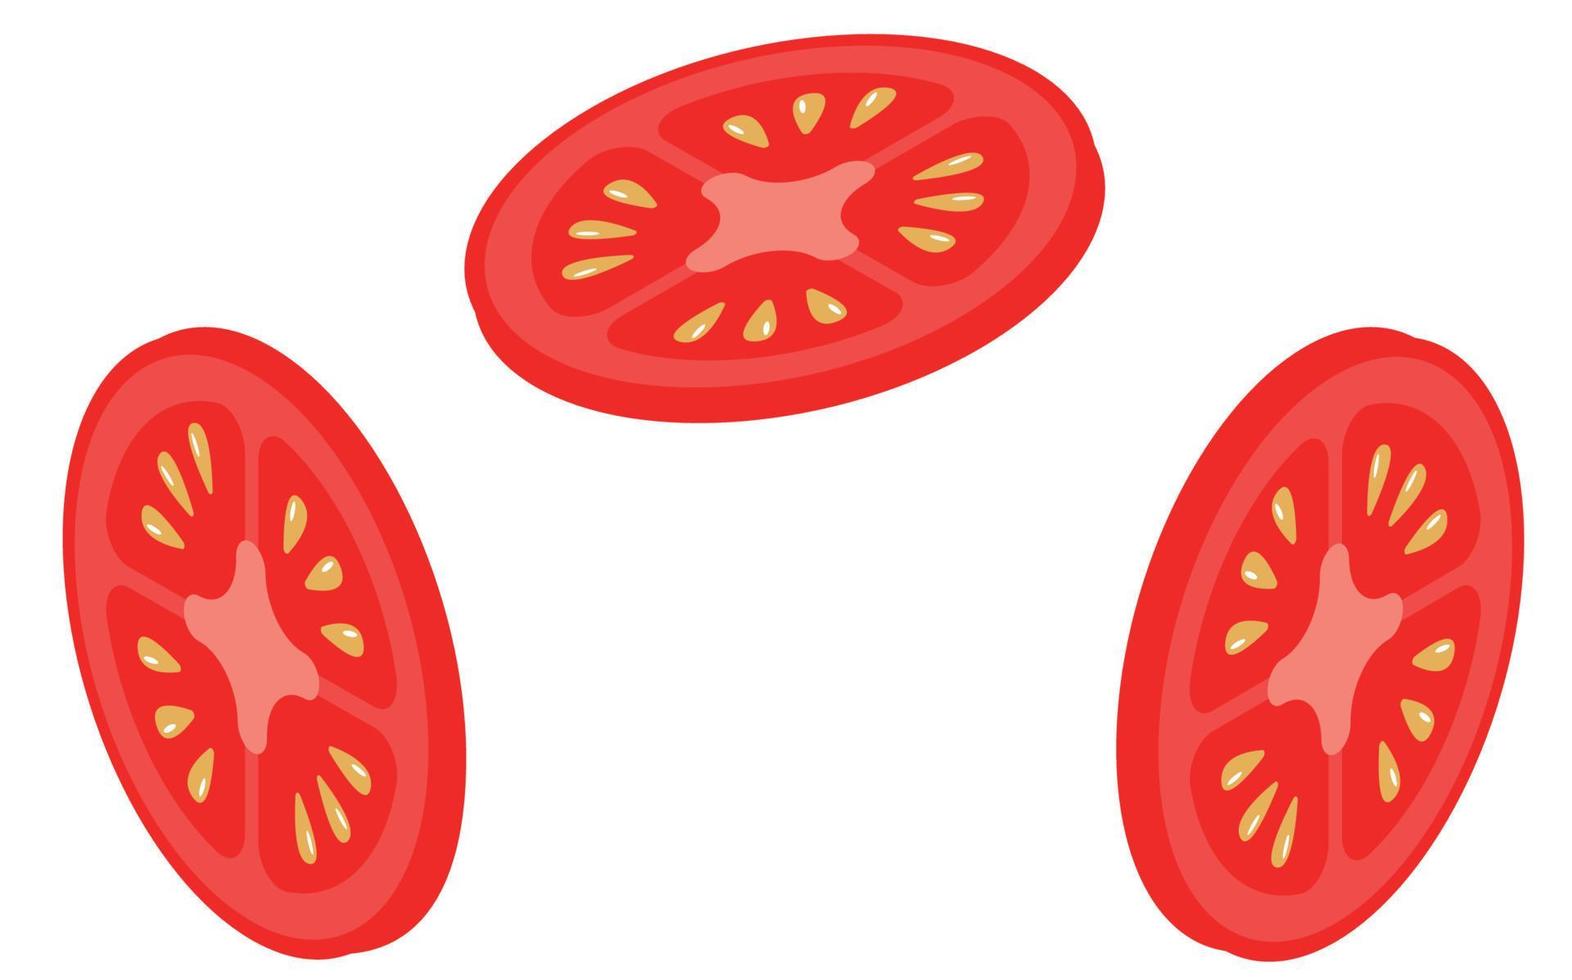 een stel tomaten. tomaten gesneden op een witte background.fresh rode groente.isometry. vector illustratie